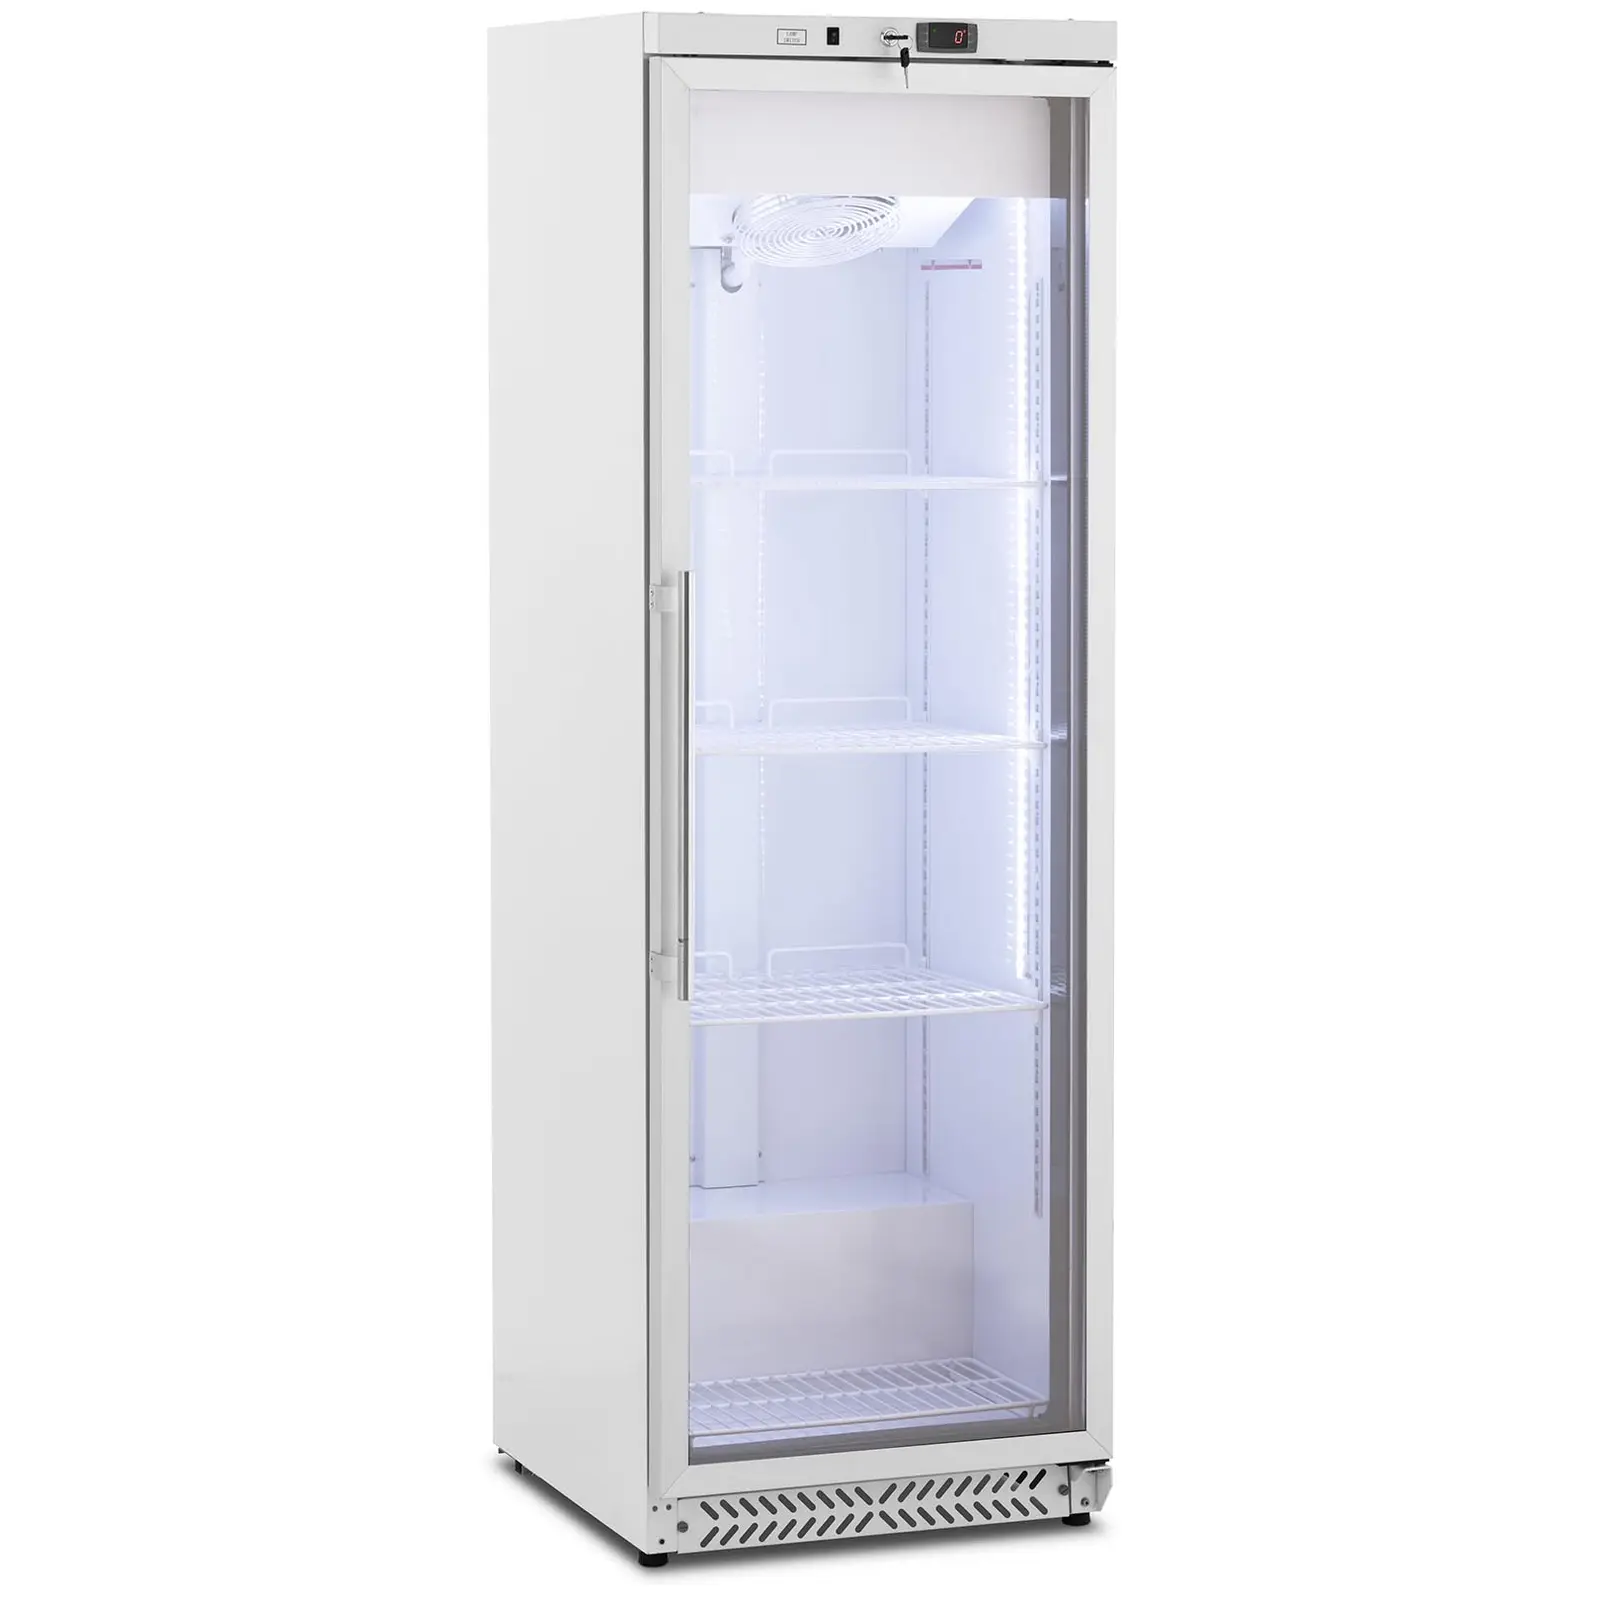 Hűtőszekrény - 380 l - Royal Catering - üvegajtóval